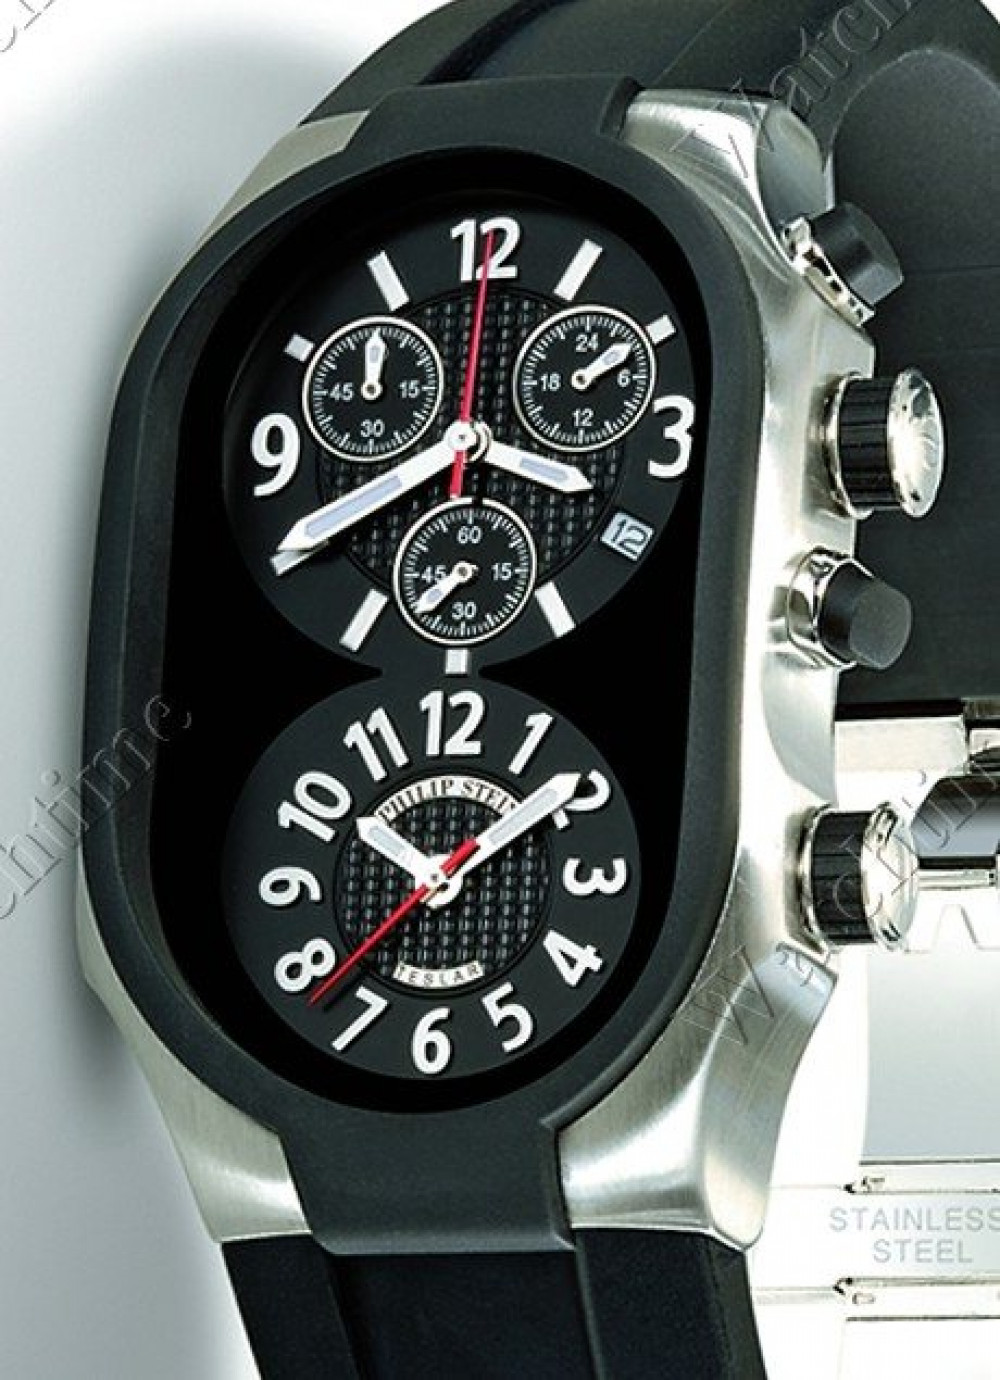 Zegarek firmy Philipp Stein, model Sport Chrono